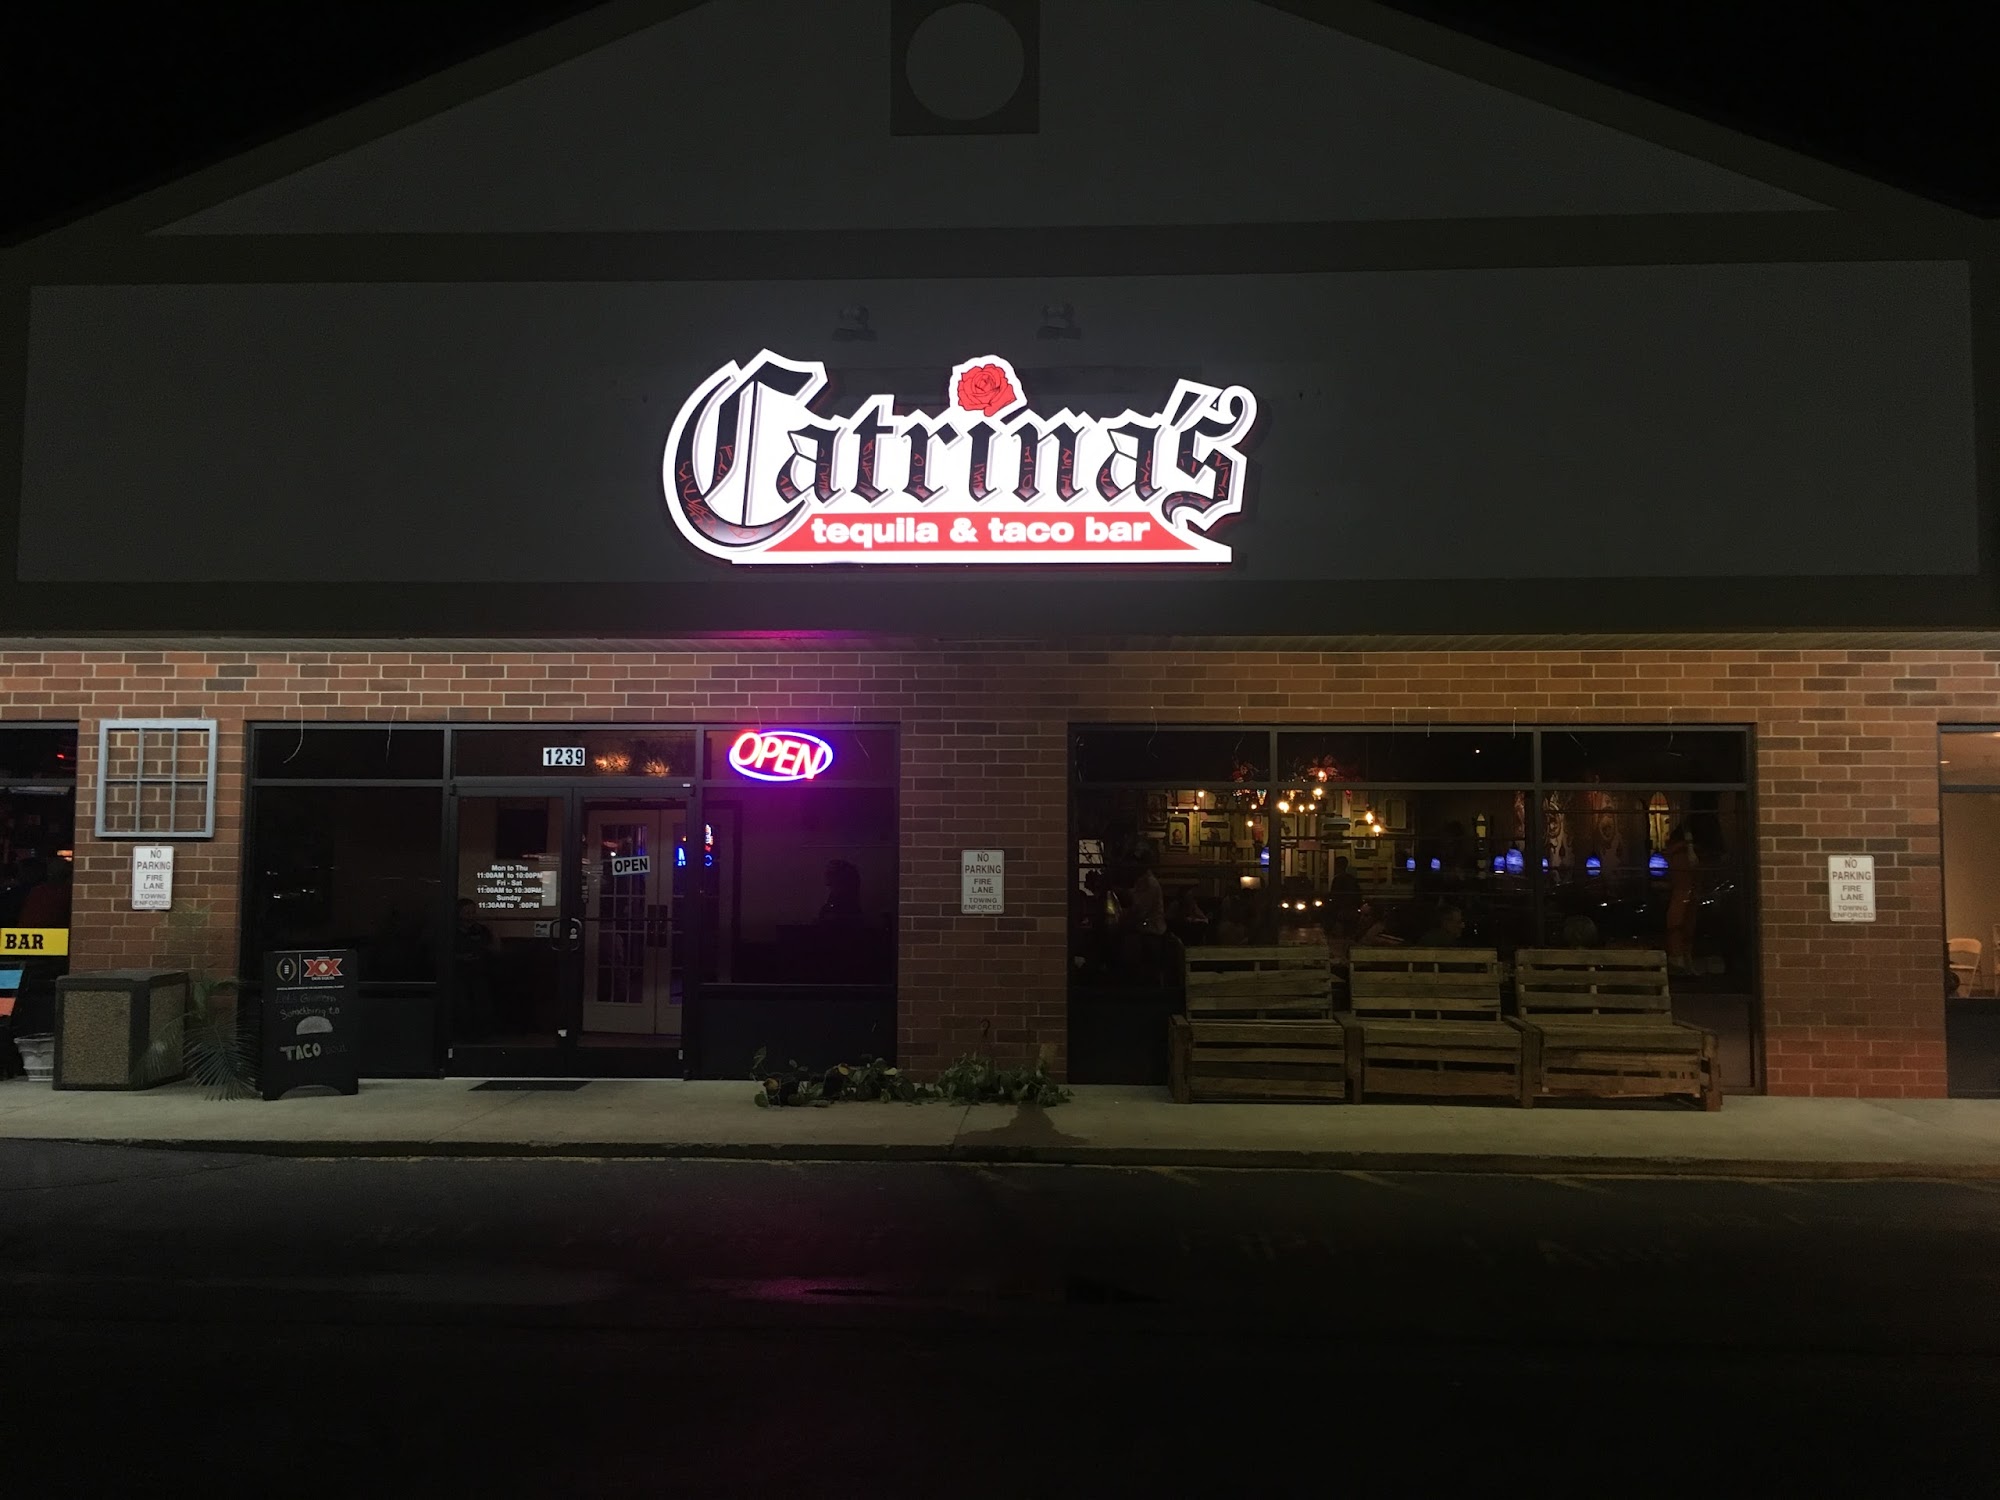 Catrina’s Tequila and Taco Bar